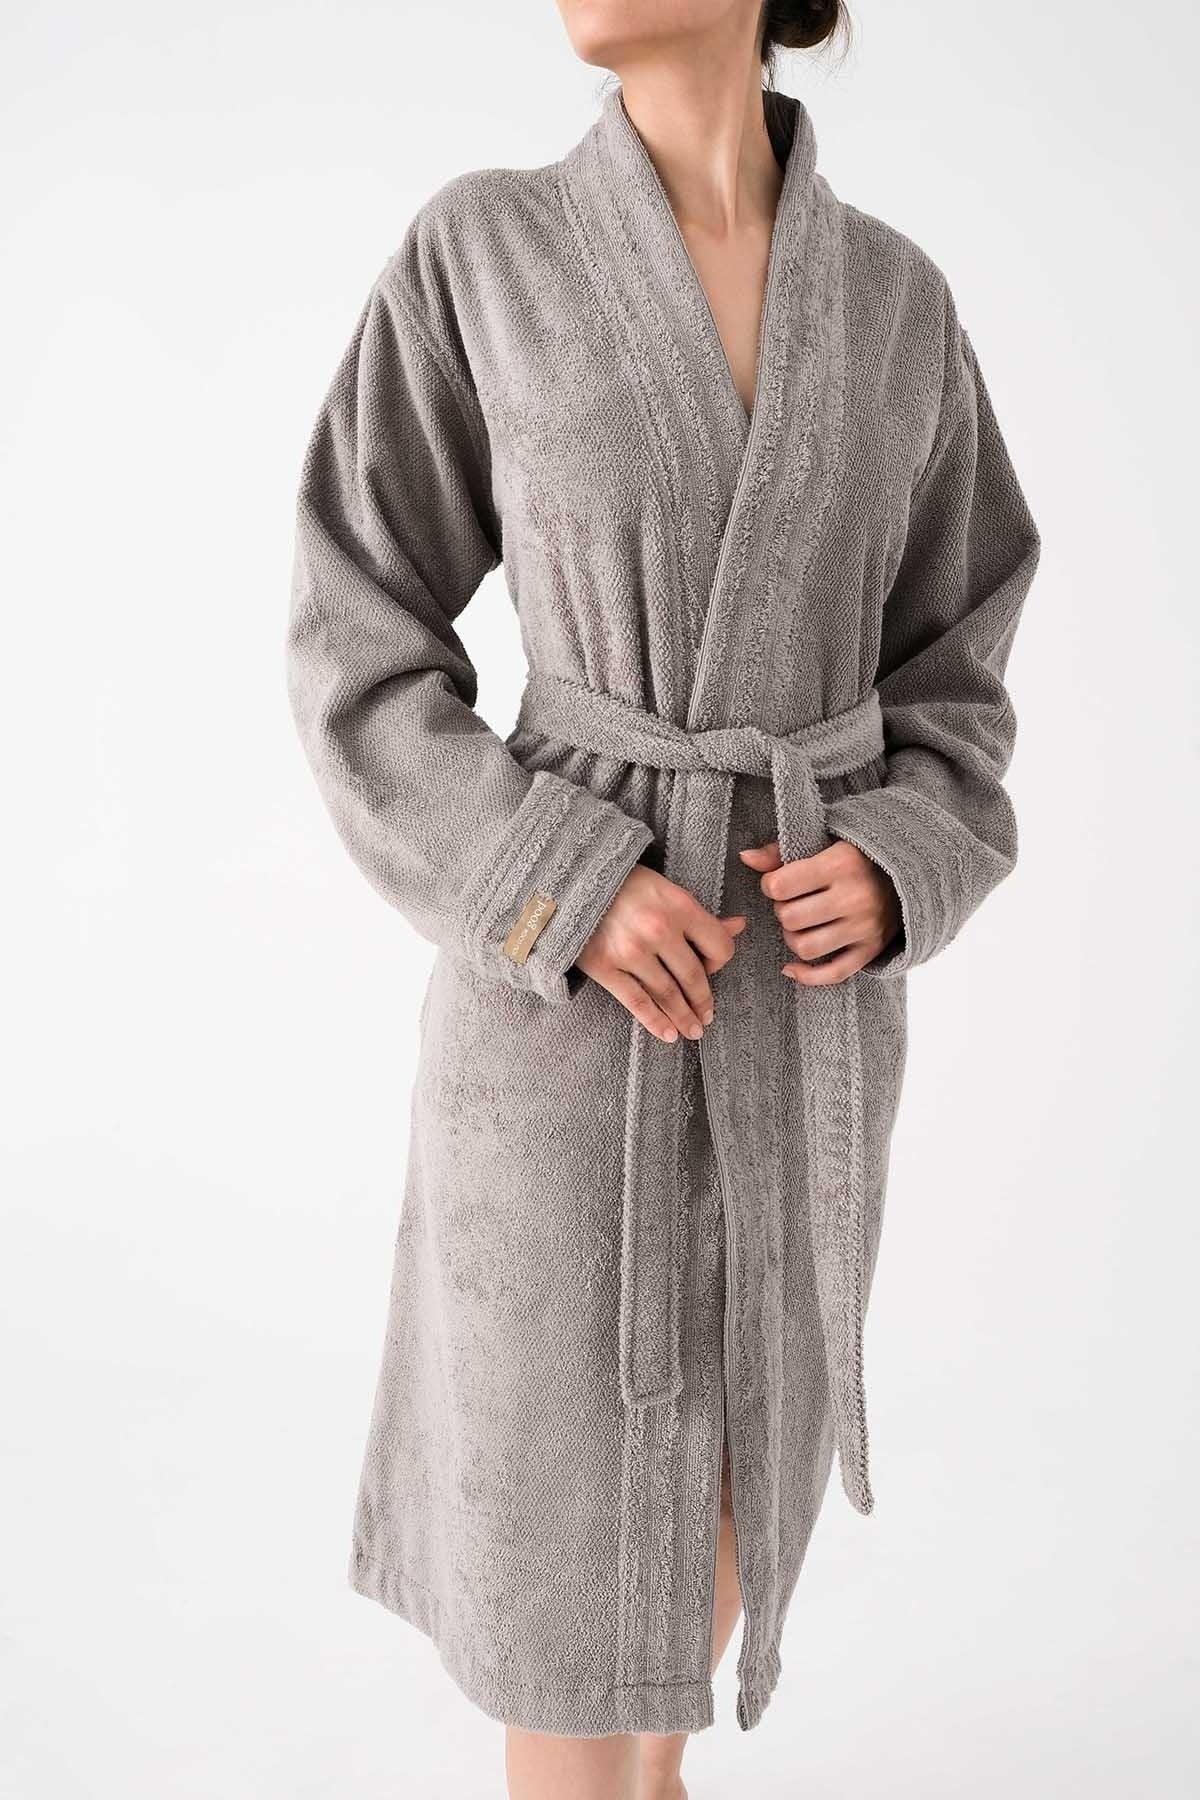 Lapis Robe 404 - New Trend